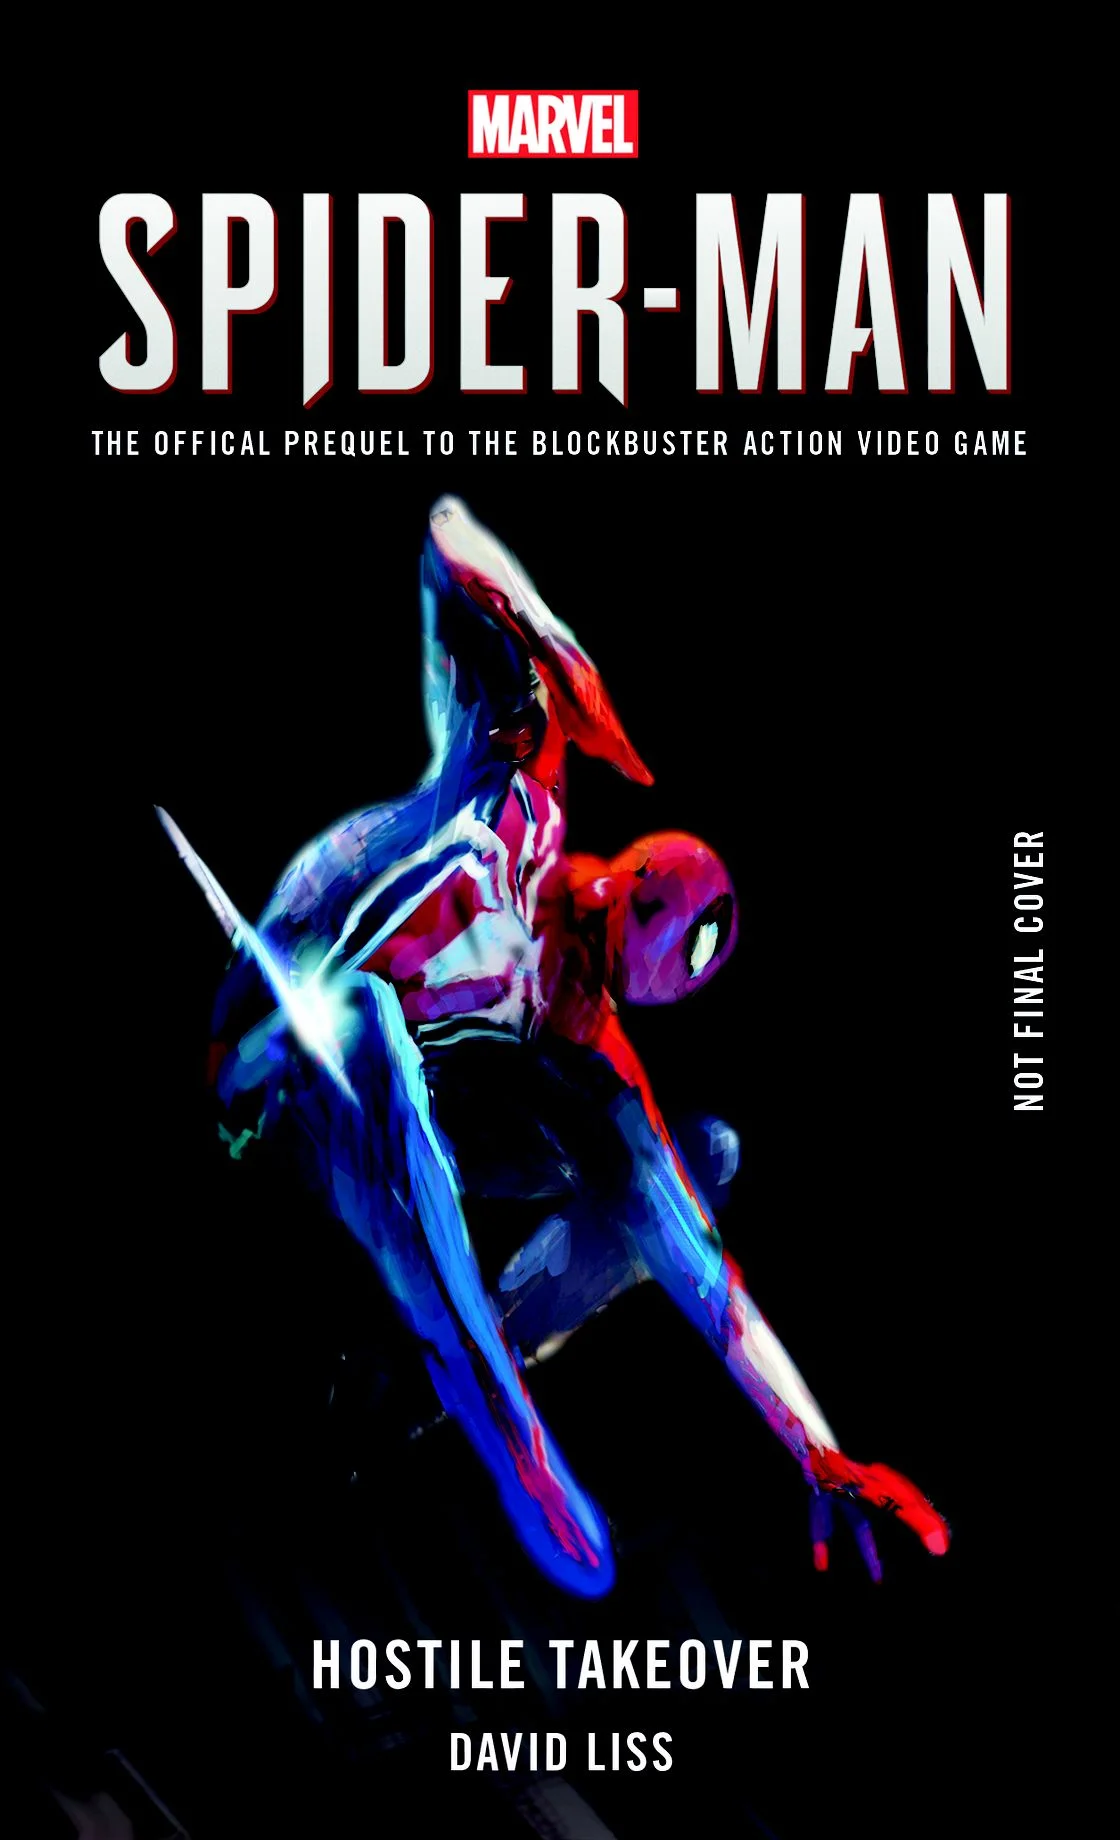 Spider-Man для PS4 получит две книги с предысторией и артбук от издательства Titan - фото 2